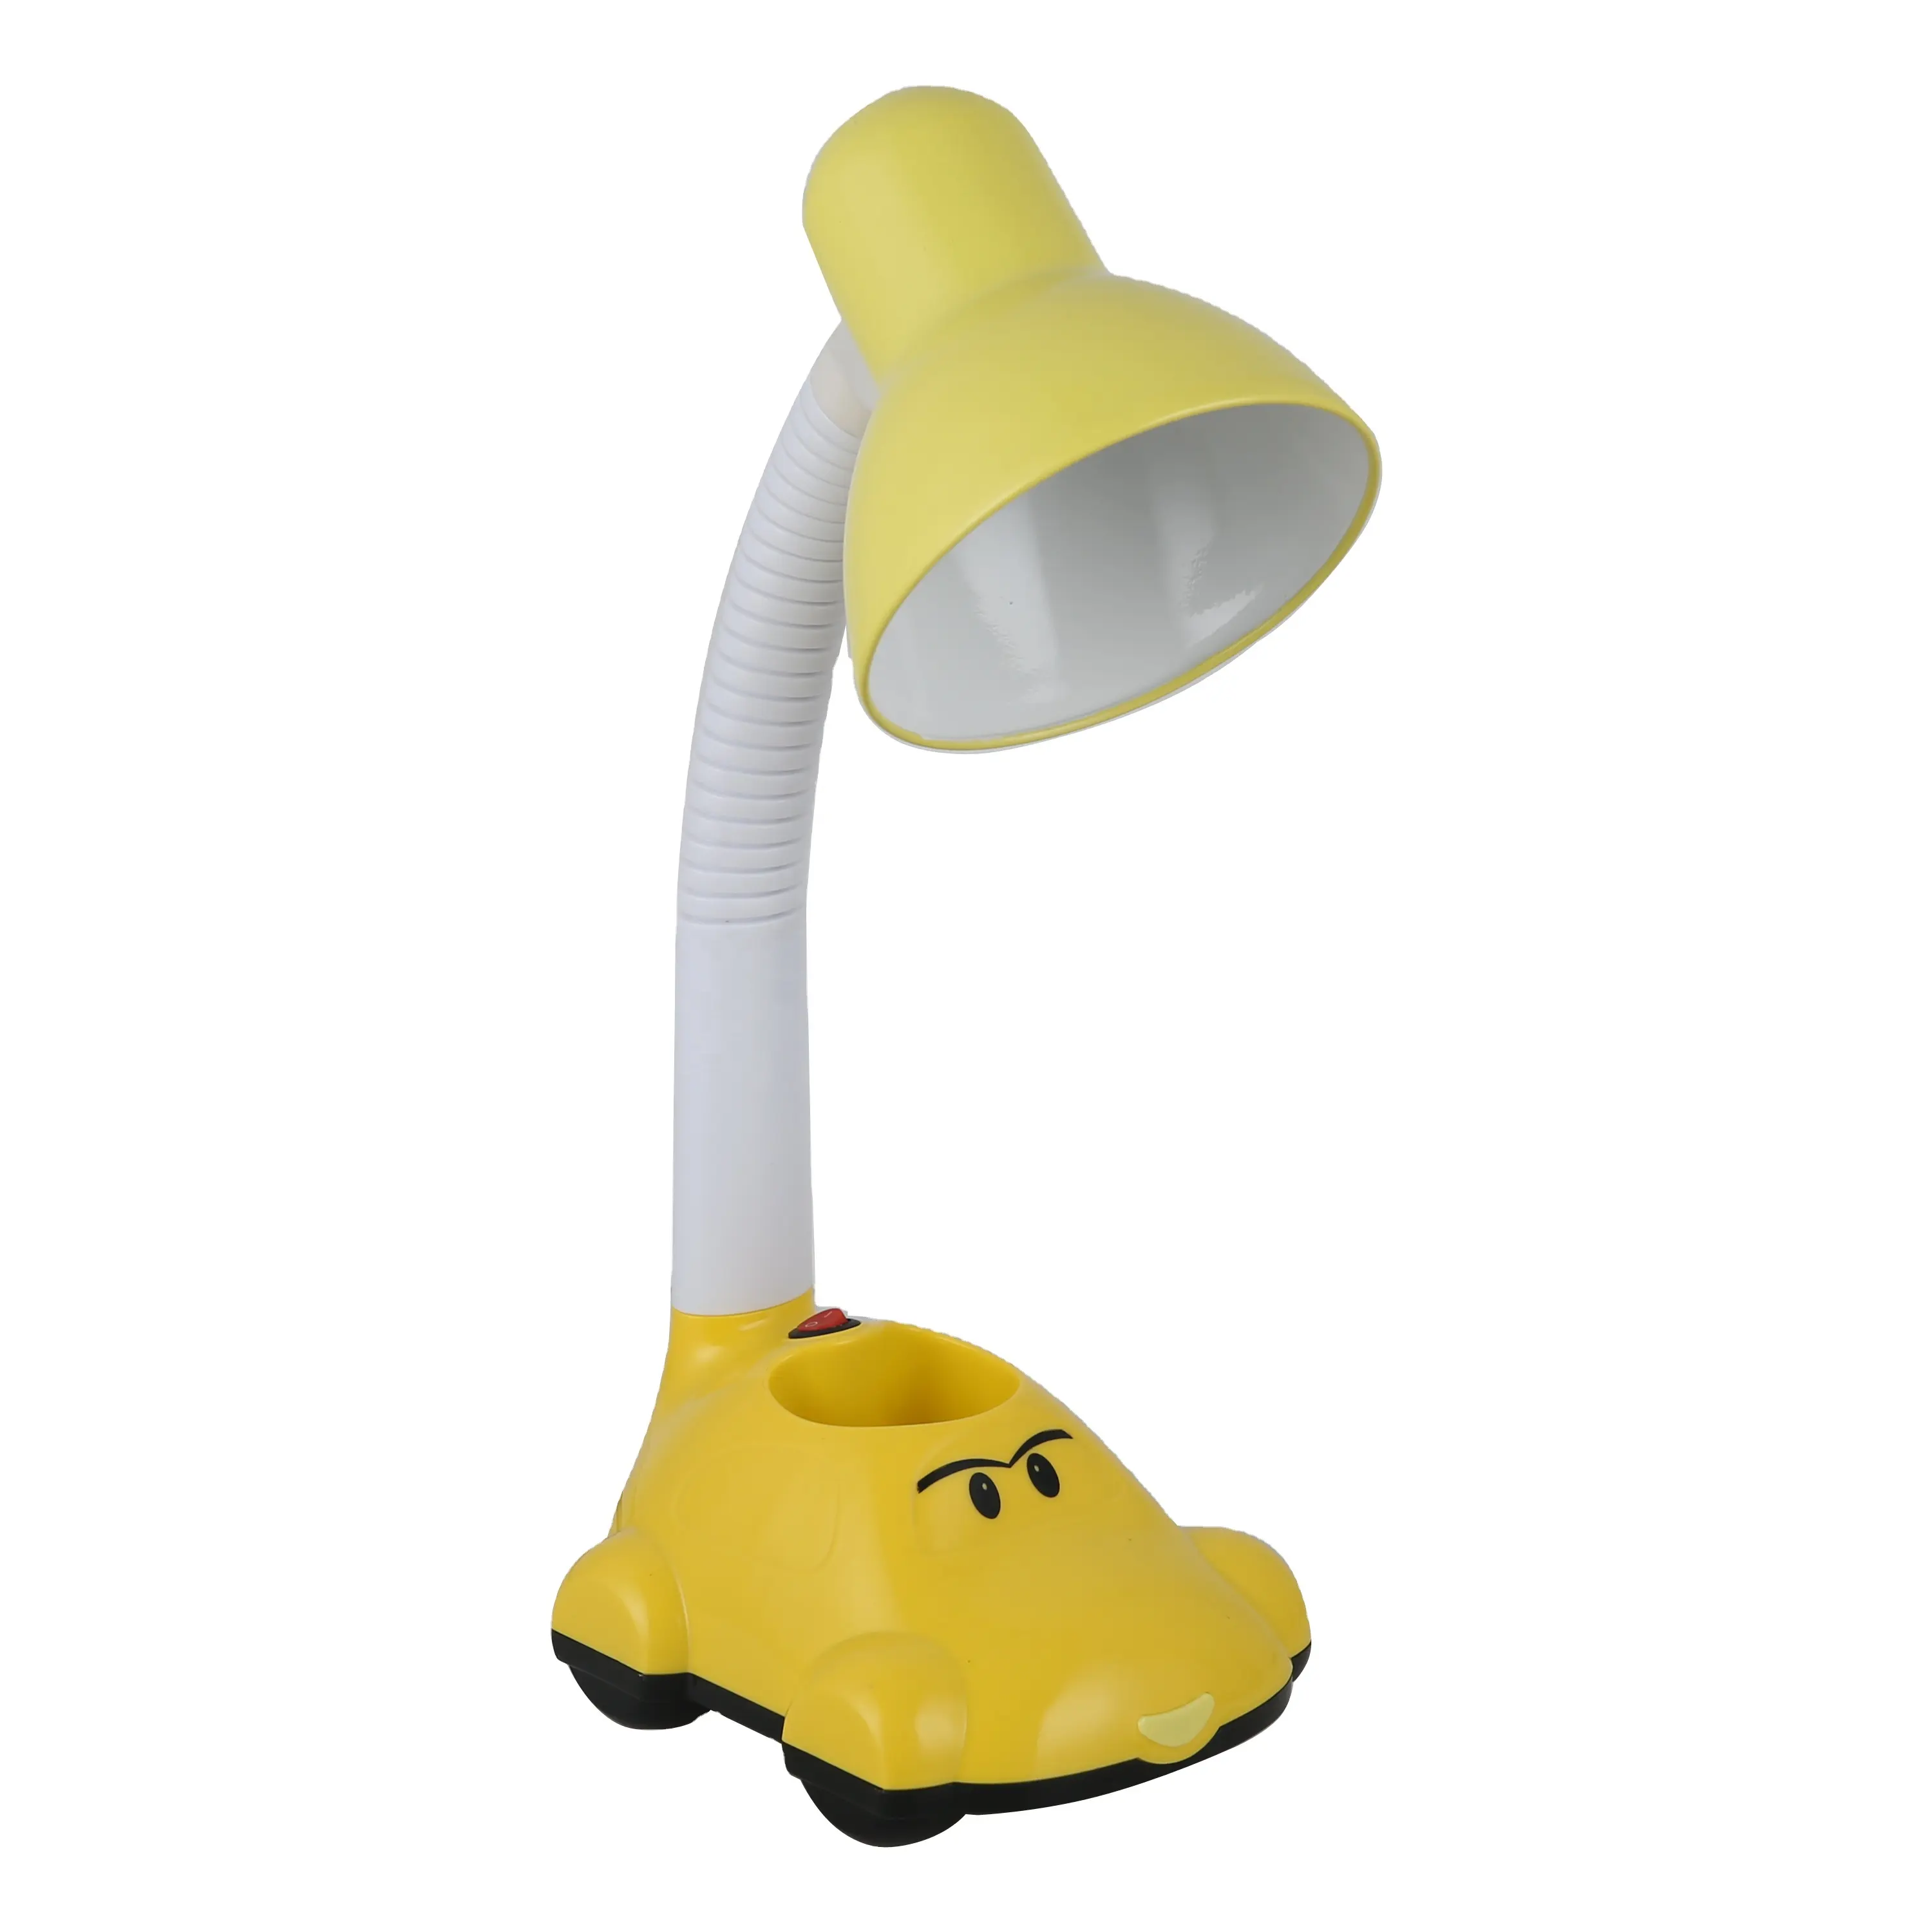 SML traditionnel dessin animé conception lampe de Table Portable Flexible enfant lampe enfants ampoule à incandescence étude bureau lampe de Table